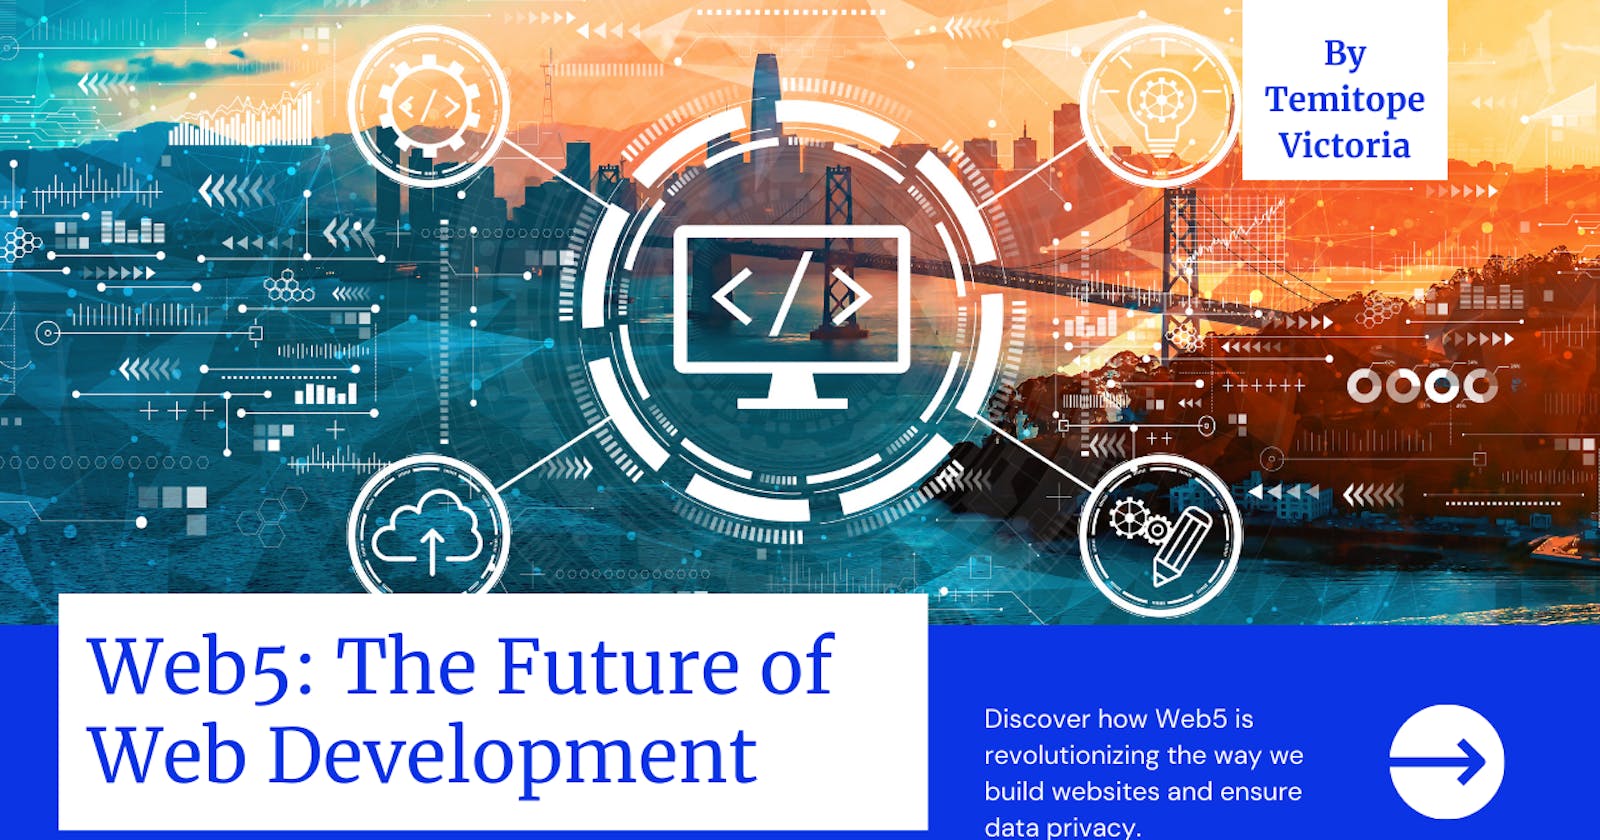 Web5: The Future of Web Development